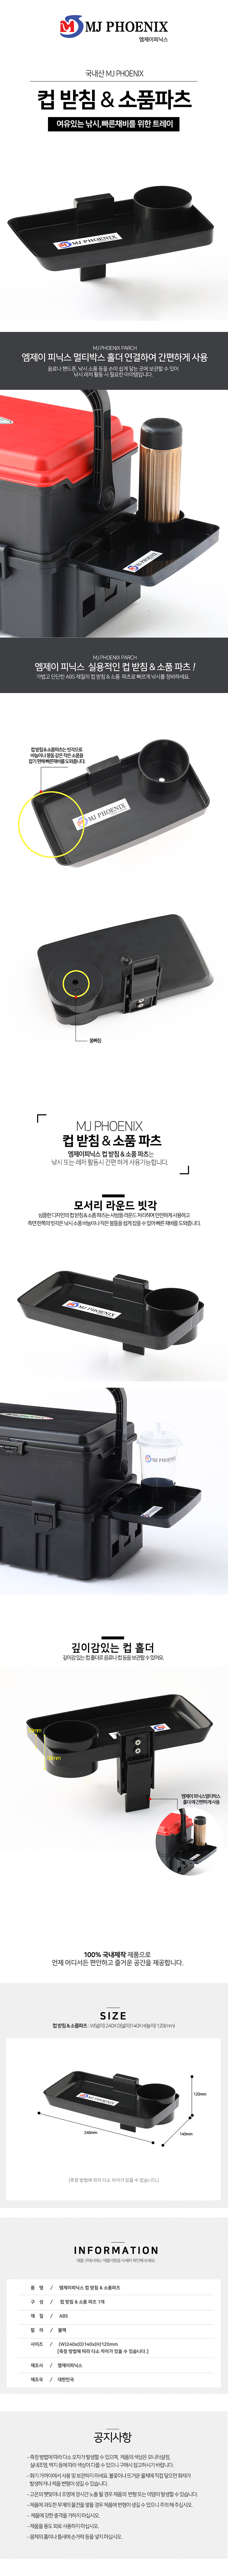 엠제이피닉스 컵받침+소품파츠 트레이 캔음료홀더 메이호호환